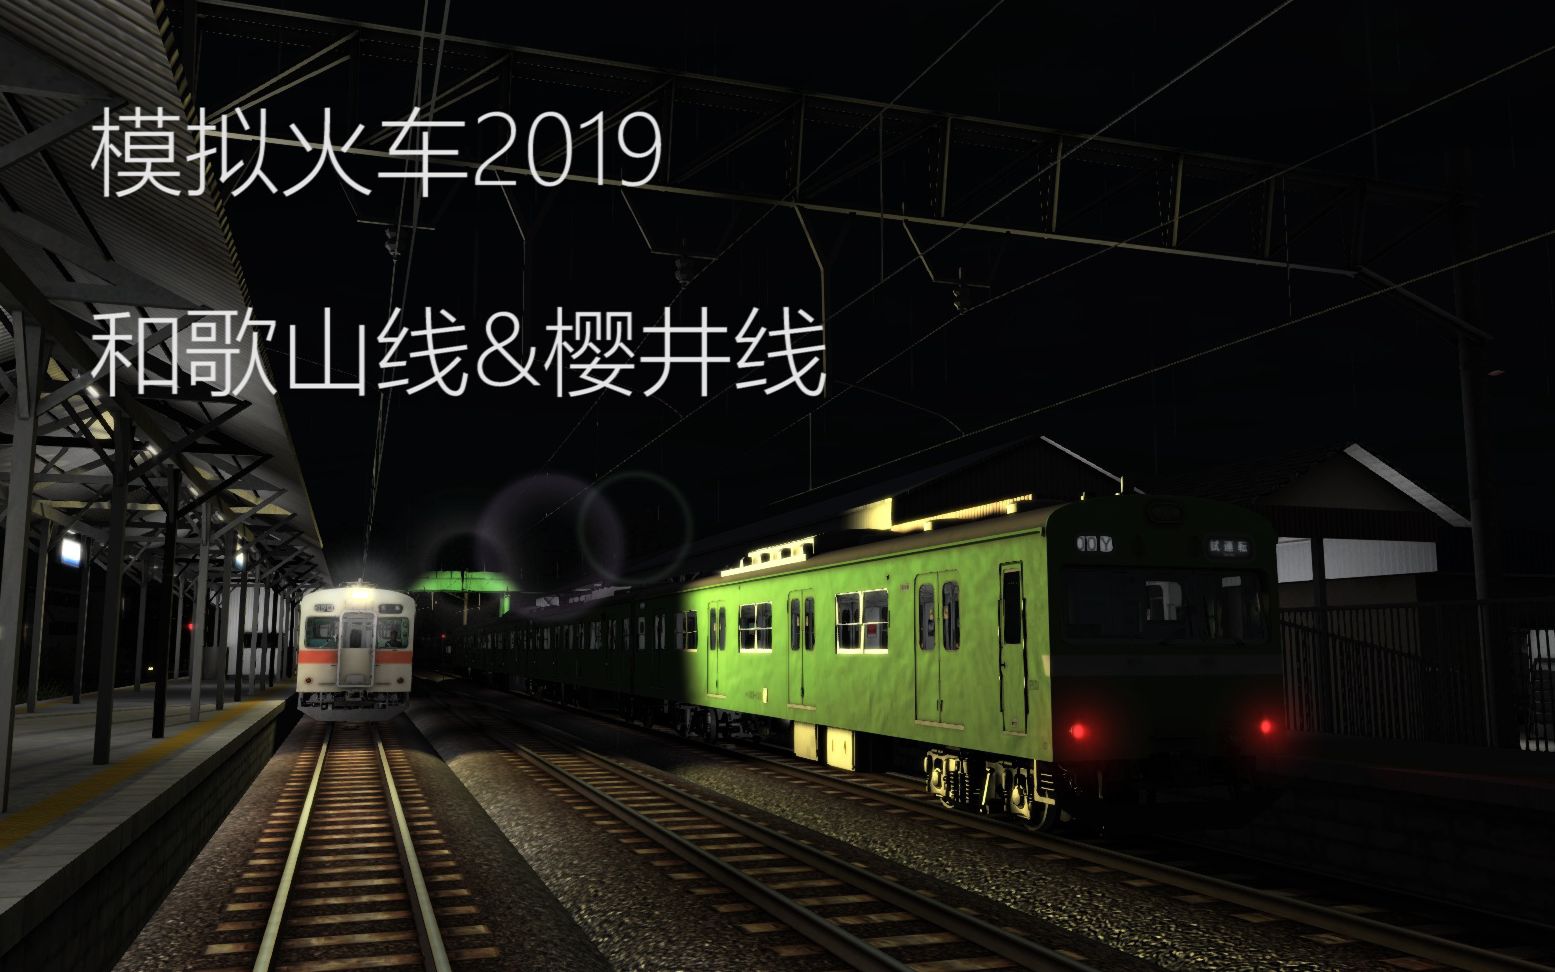 模拟火车2019 和歌山线 樱井线105电车下电影 52movs Com